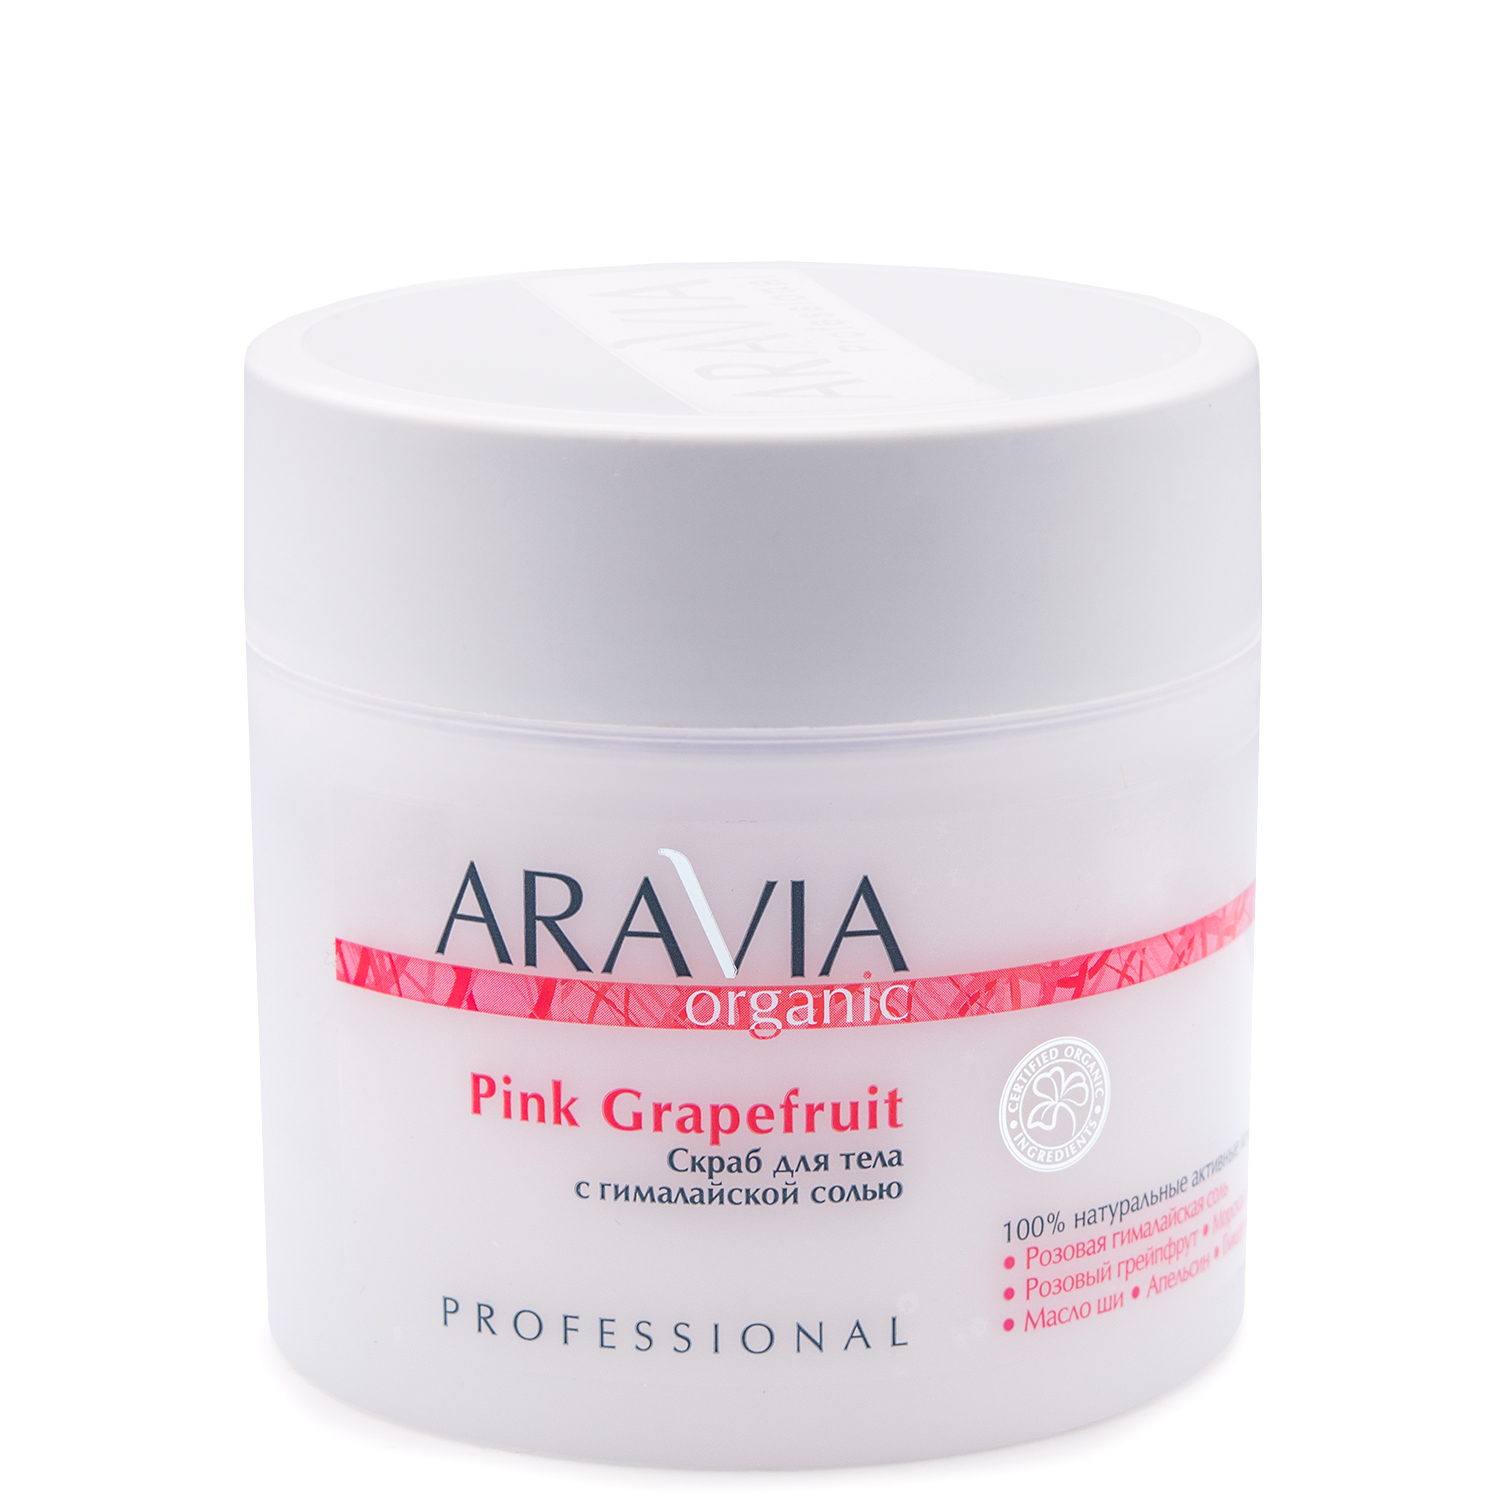 Скраб для тела Aravia Professional с гималайской солью 300 мл скраб для тела с гималайской солью aravia organic pink grapefruit 300 мл